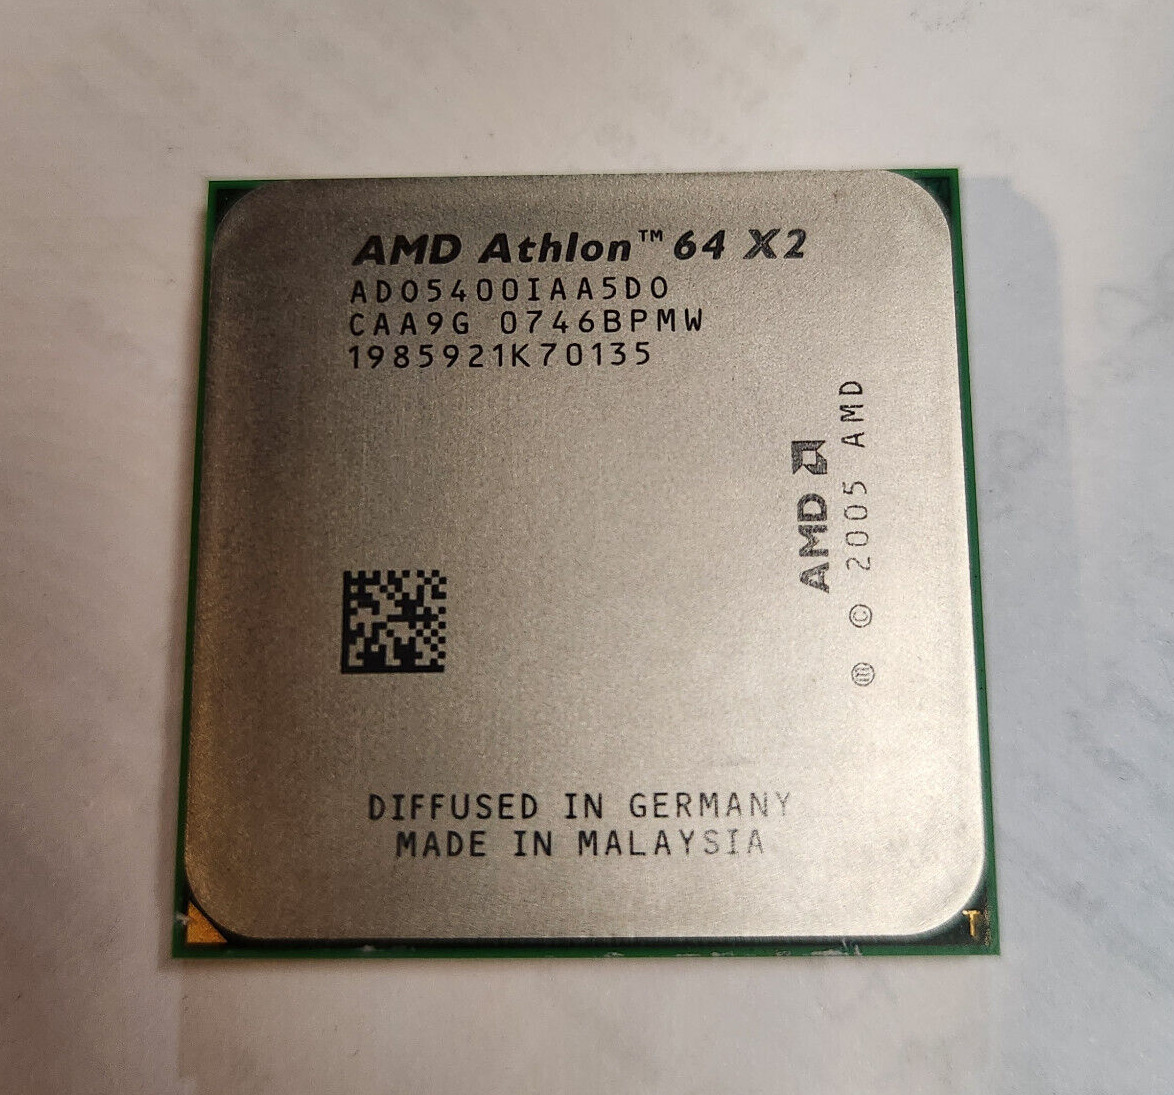 AMD Athlon 64 X2 5400+ 2.80GHz DualCore Desktop ADO5400IAA5DO